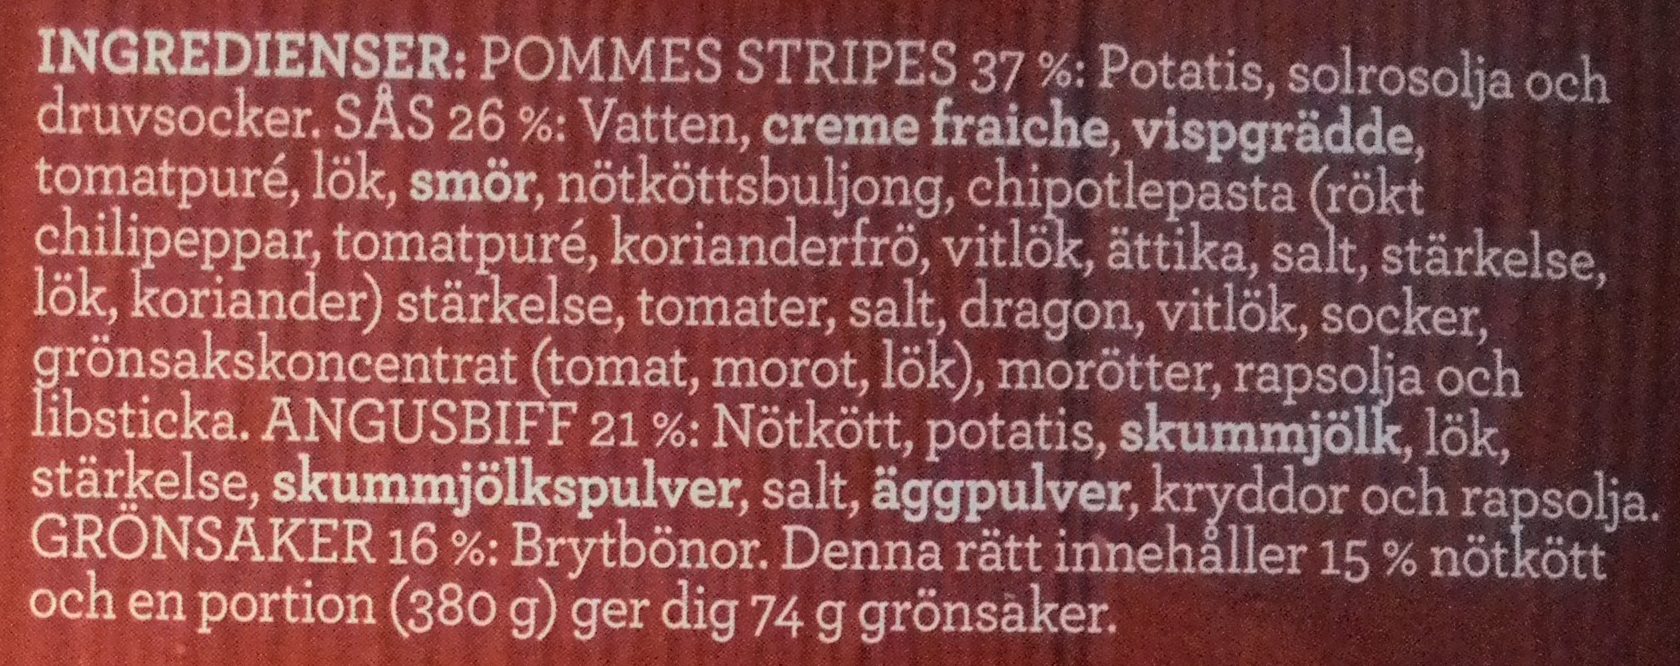 Findus Dagens Grillad Angusbiff med pommes stripes - Ingredienser - sv